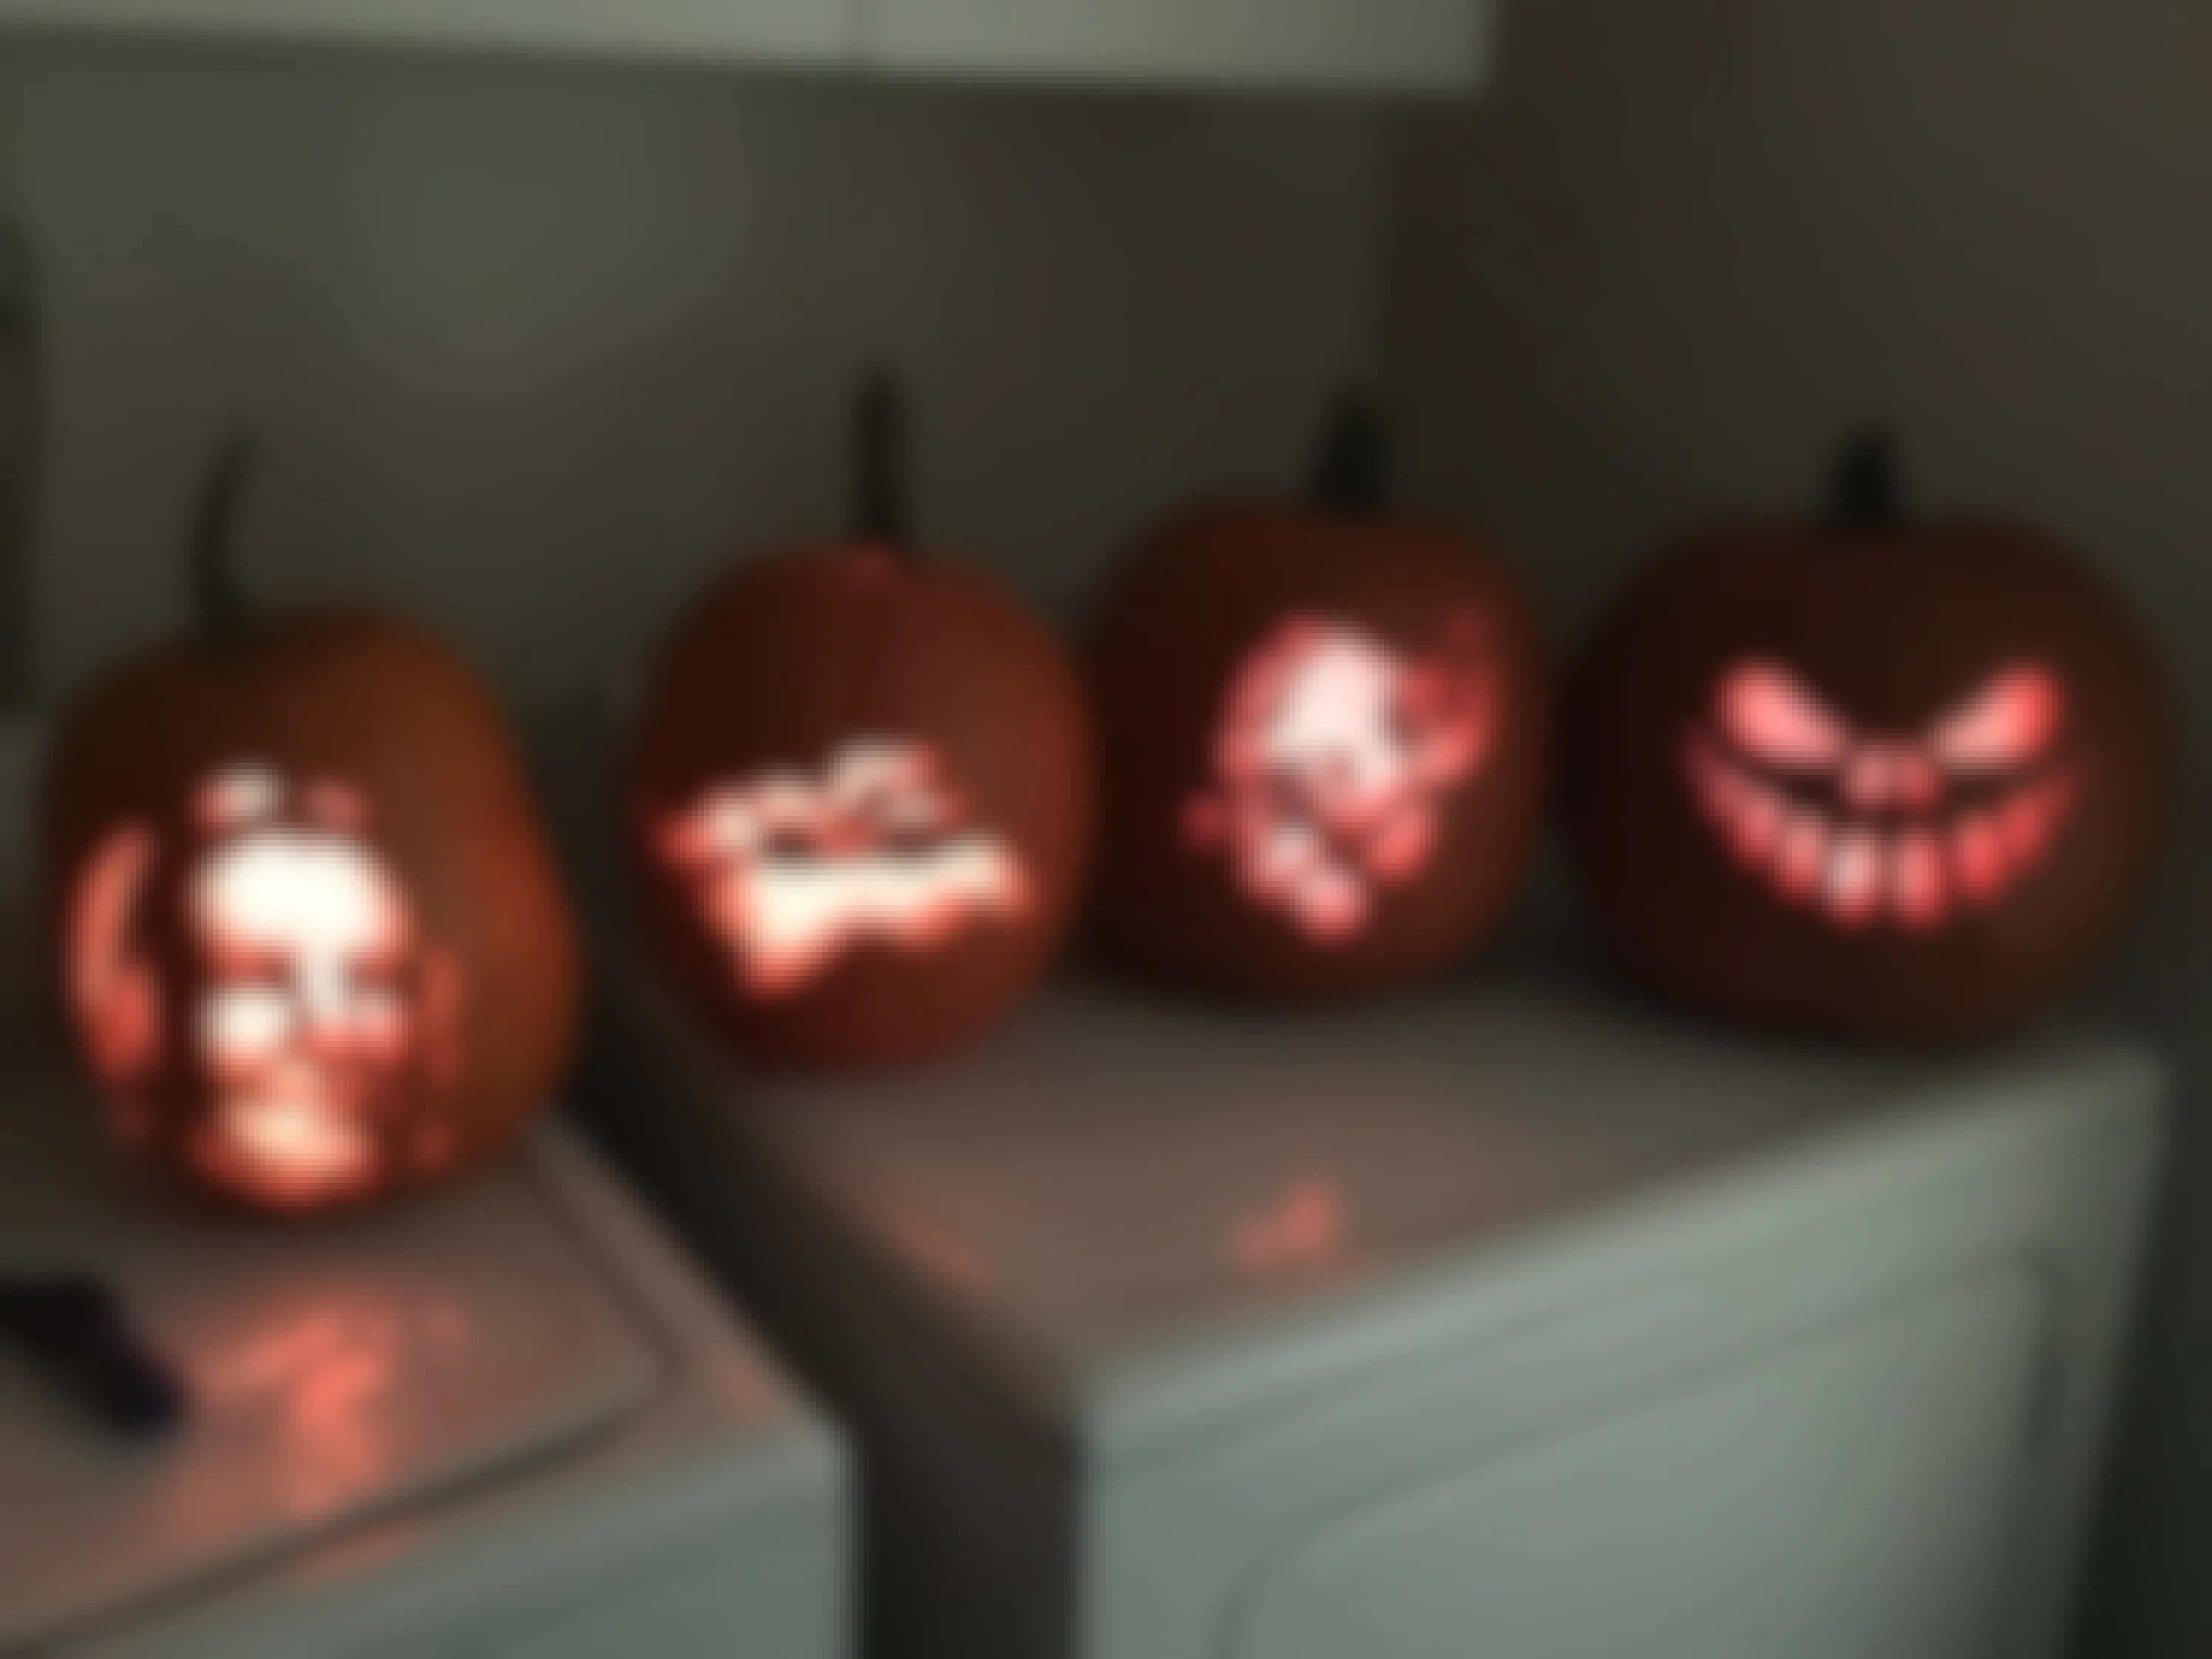 4 Carved pumpkins